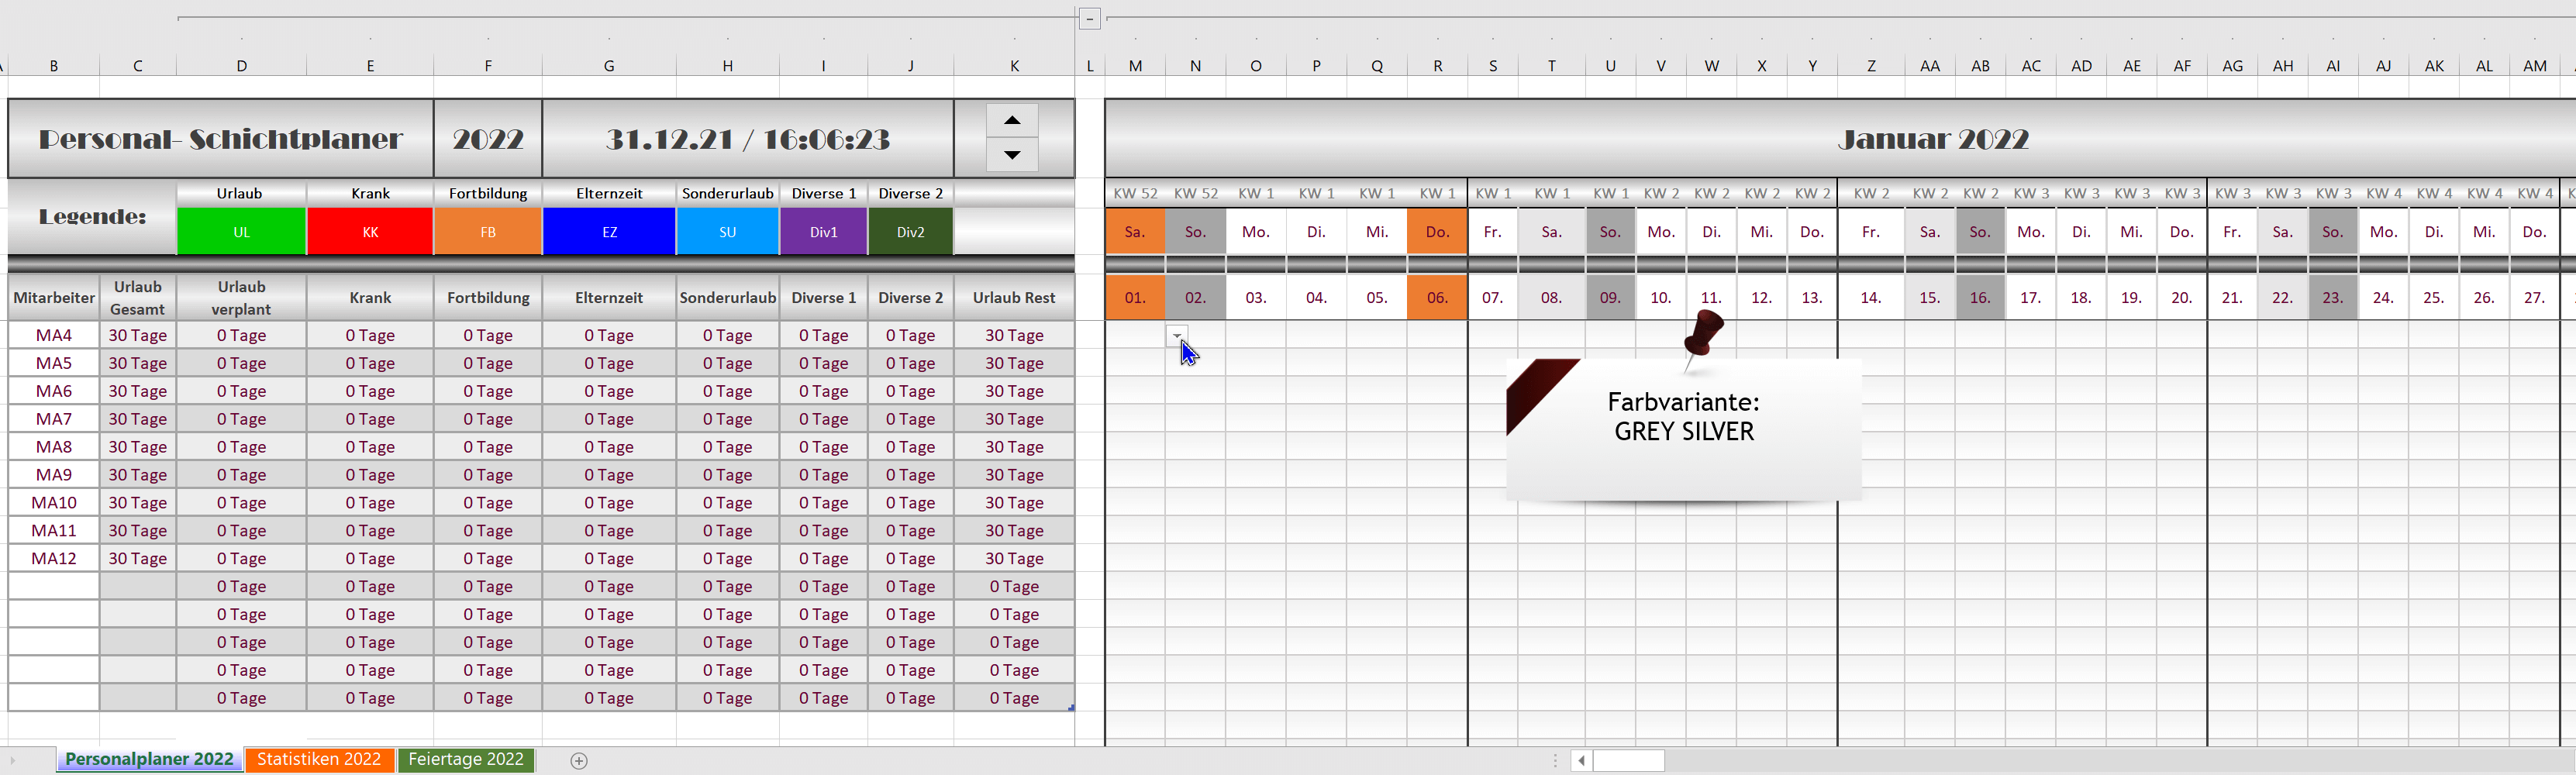 Excel Schichtplaner-Personalplaner 2022 - GREY SILVER 1.3